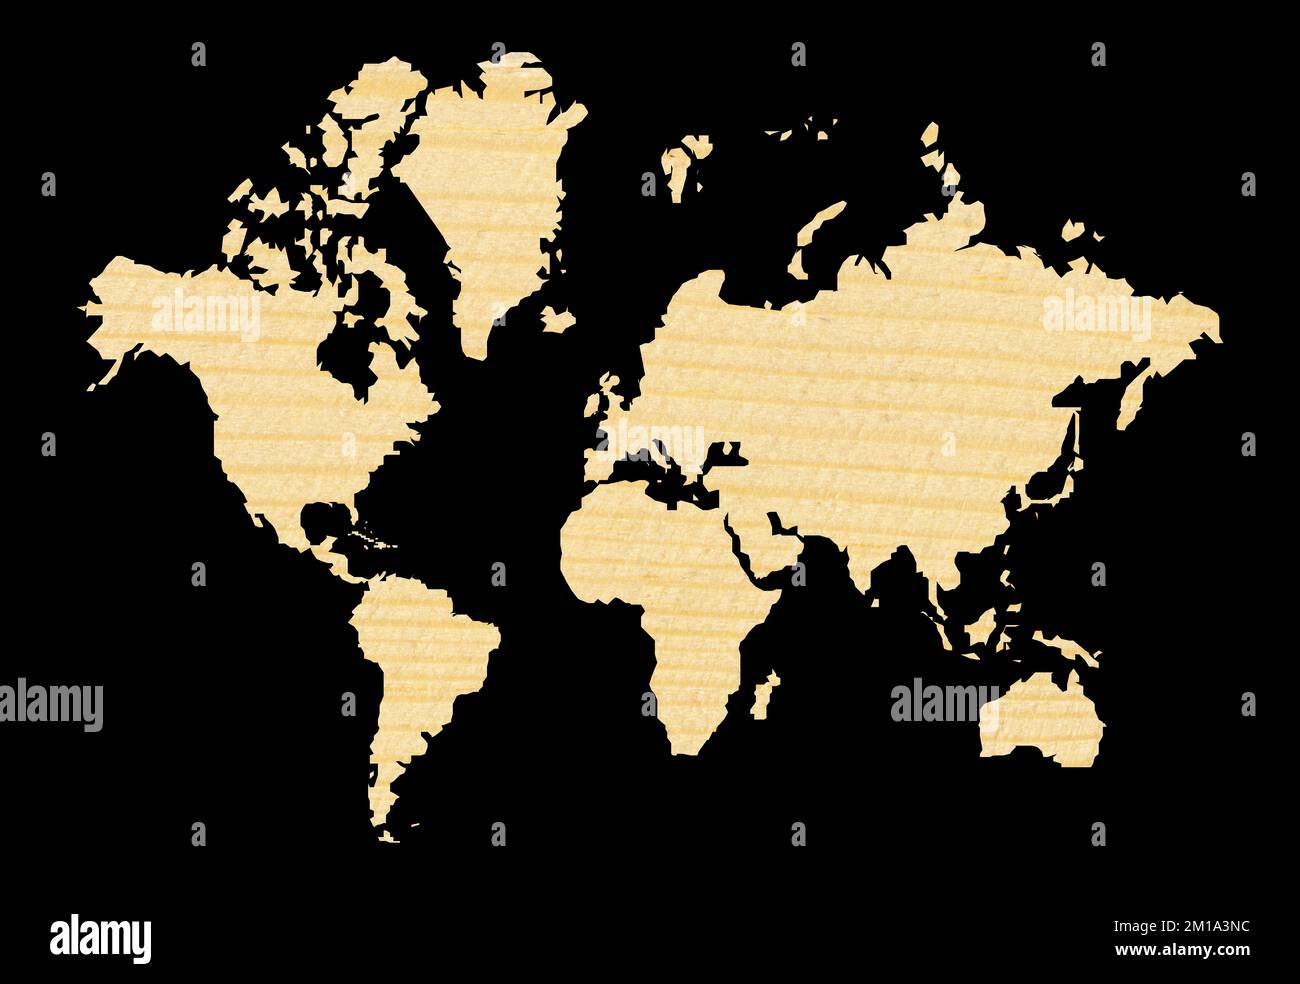 Carte du monde décorative et détaillée coupée de pin à texture bois, carte du monde transparente montrant les continents, isolée sur fond noir Banque D'Images